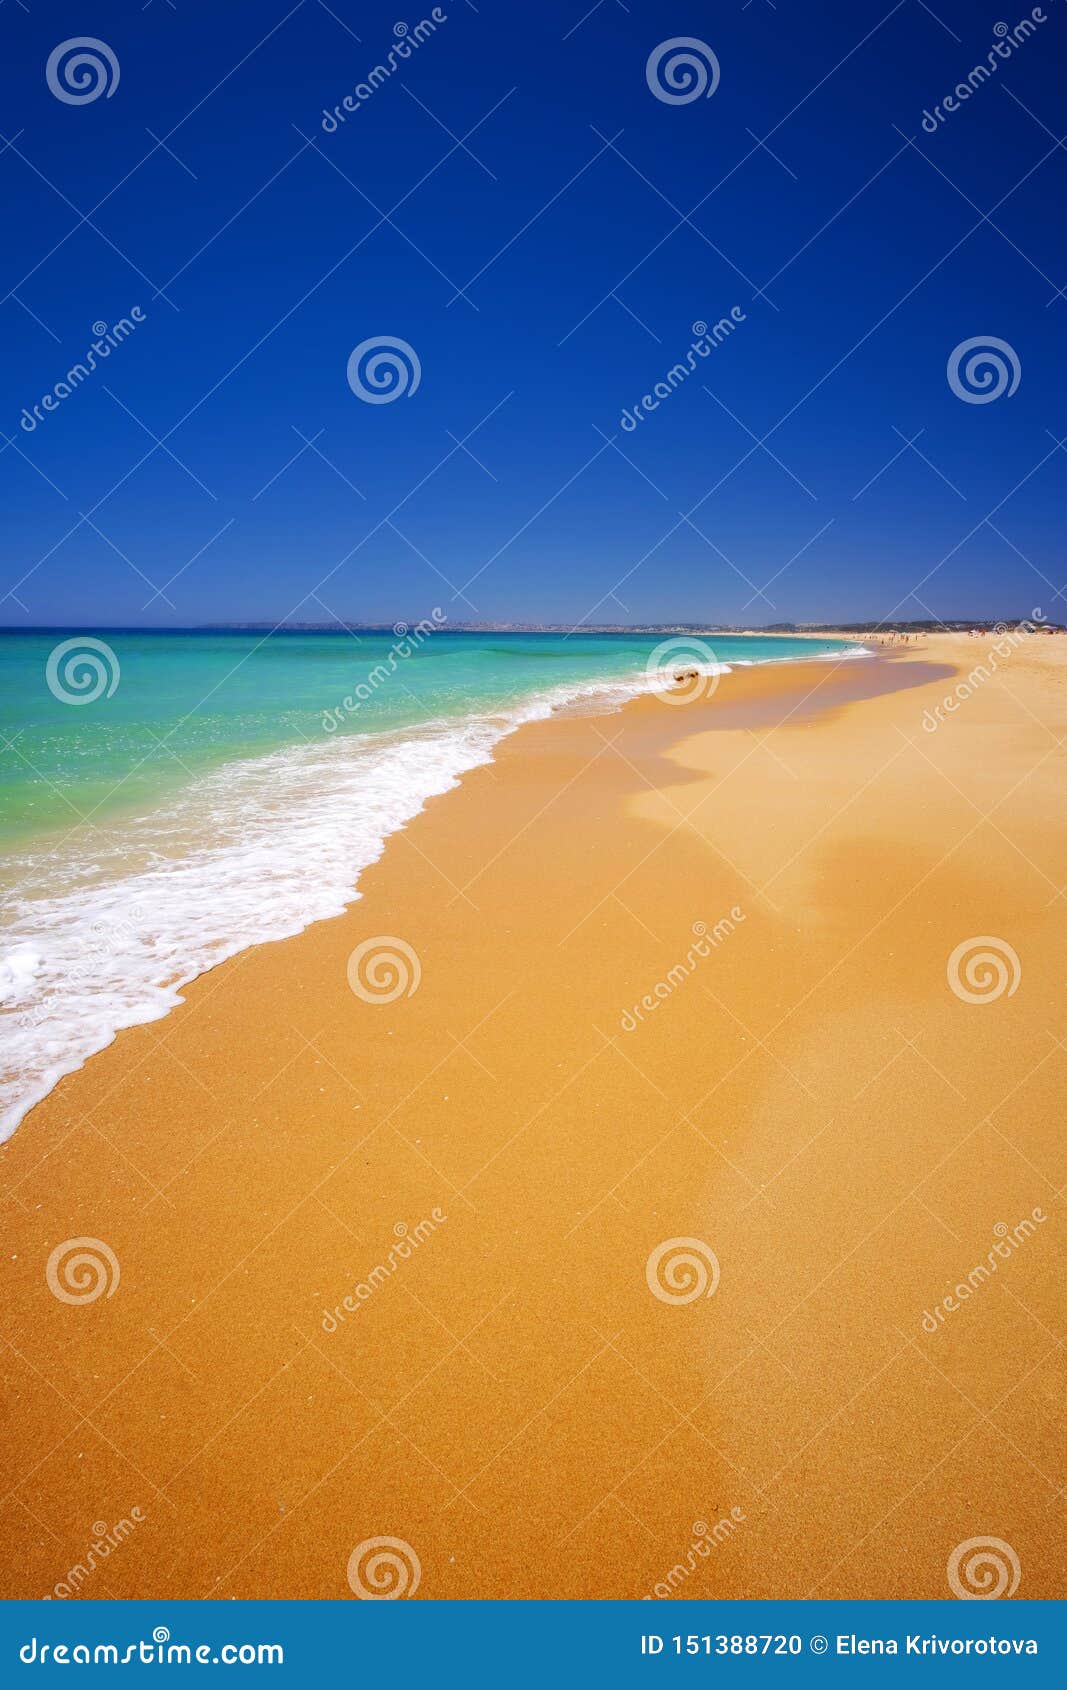 beach alvor poente in algarve, portugal